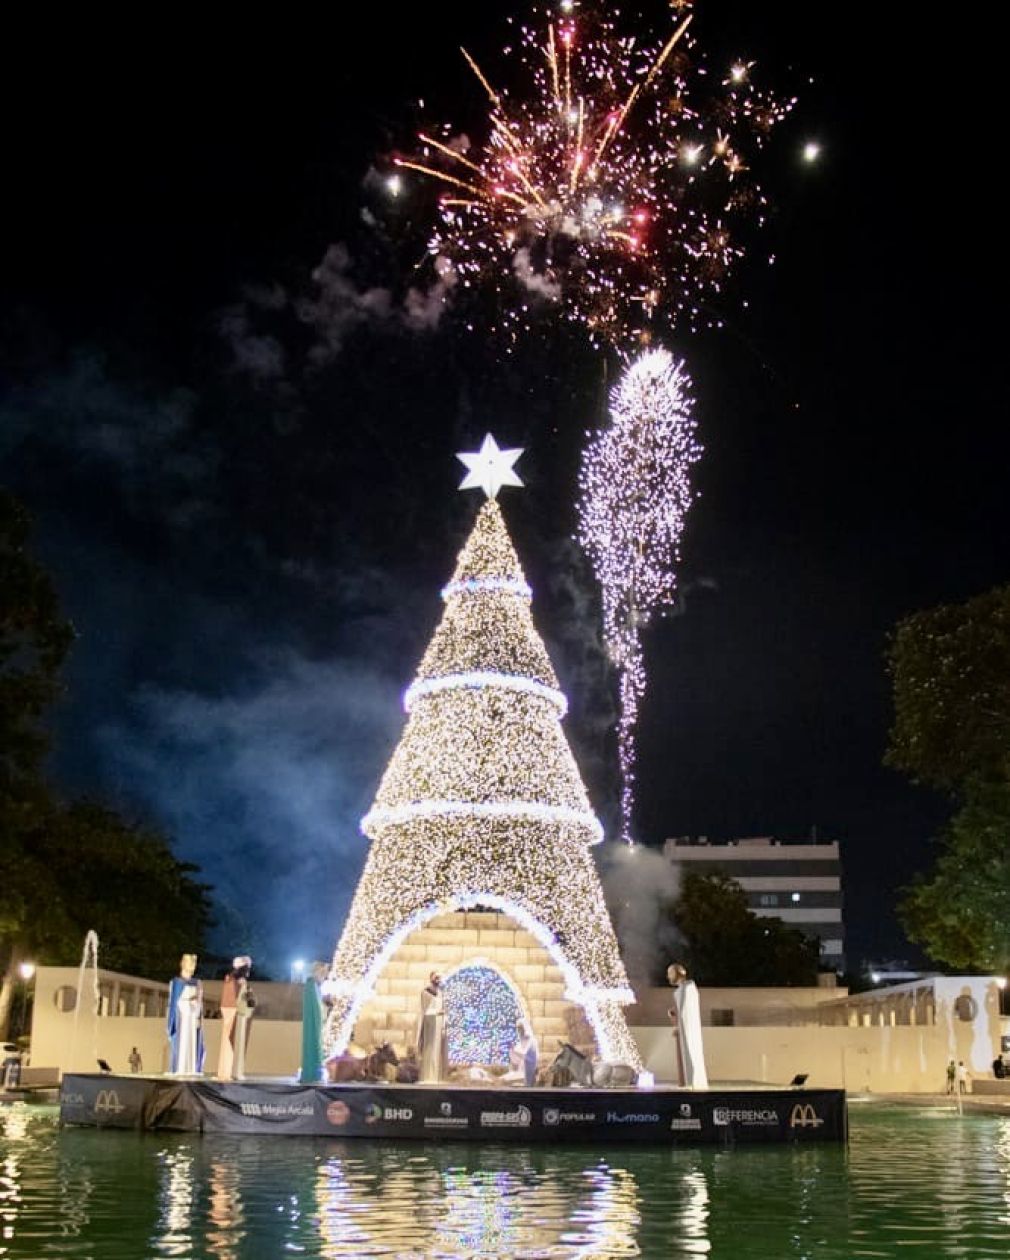 La Alcaldía del Distrito Nacional iluminó la ciudad con el encendido del árbol navideño en la fuente del parque Eugenio María de Hostos.